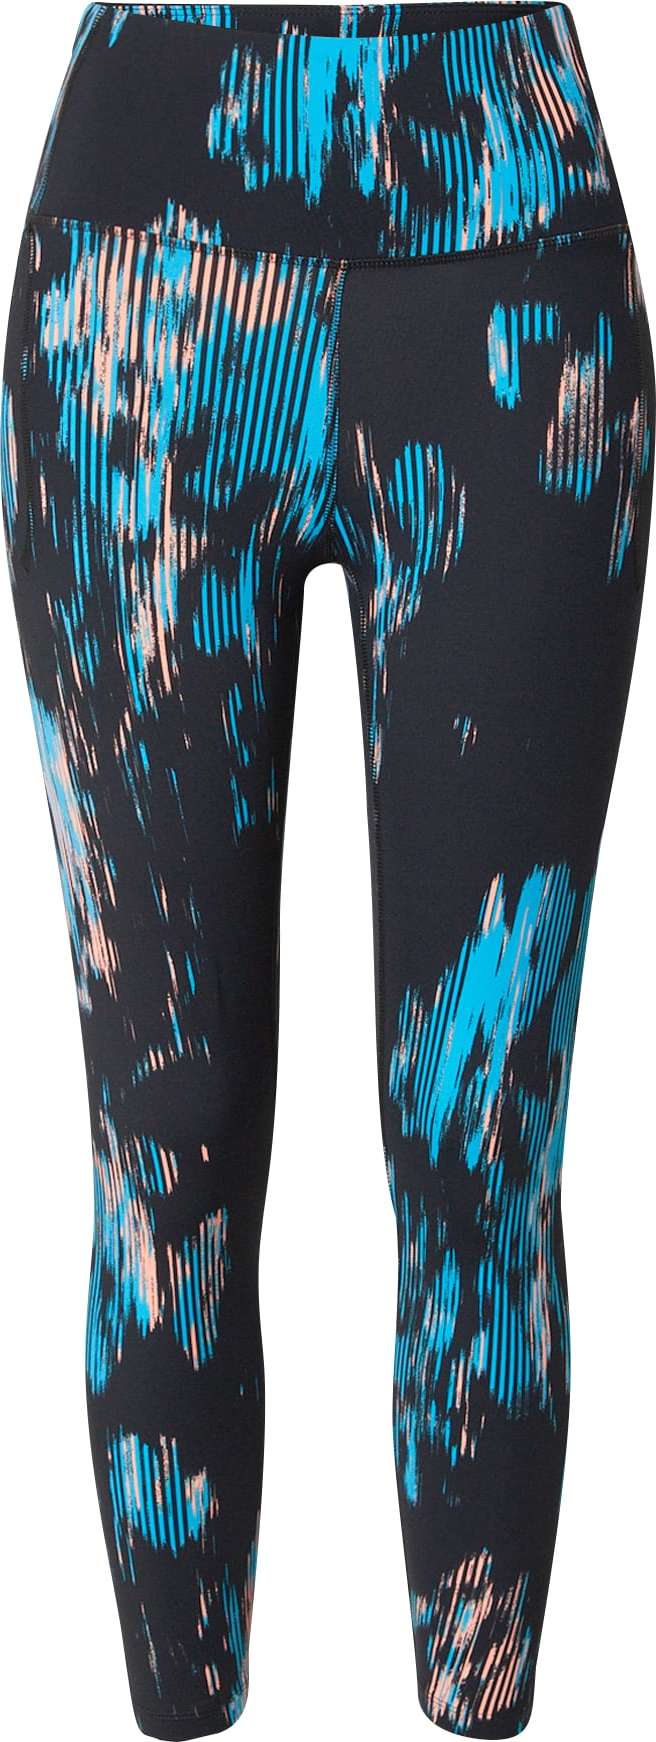 UNDER ARMOUR Sportovní kalhoty 'Meridian' aqua modrá / broskvová / černá